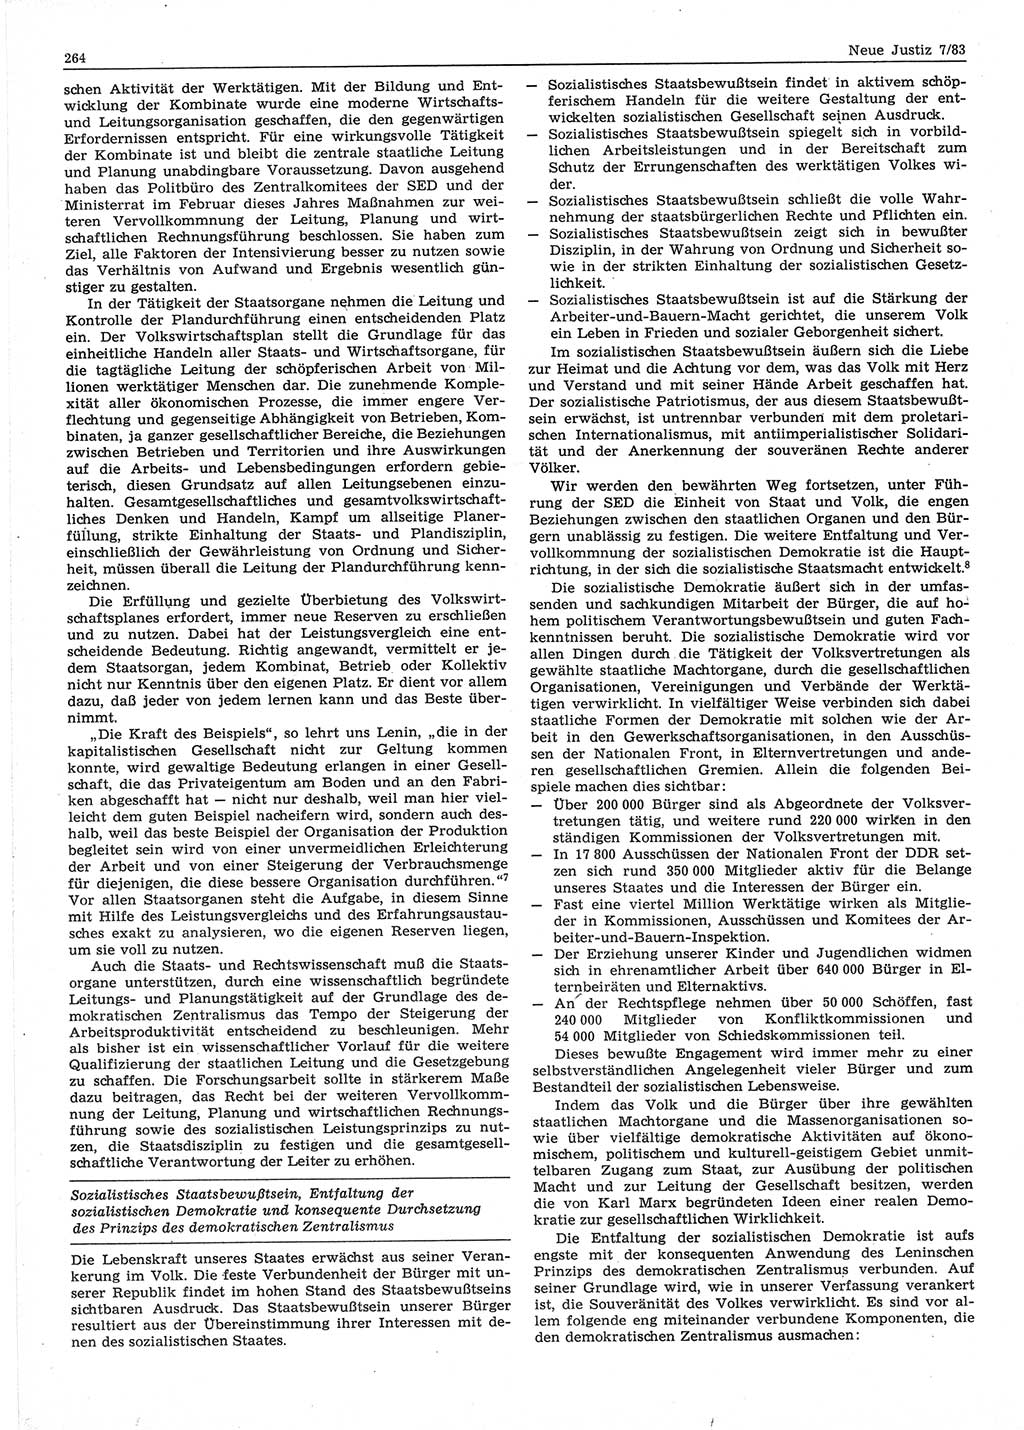 Neue Justiz (NJ), Zeitschrift für sozialistisches Recht und Gesetzlichkeit [Deutsche Demokratische Republik (DDR)], 37. Jahrgang 1983, Seite 264 (NJ DDR 1983, S. 264)